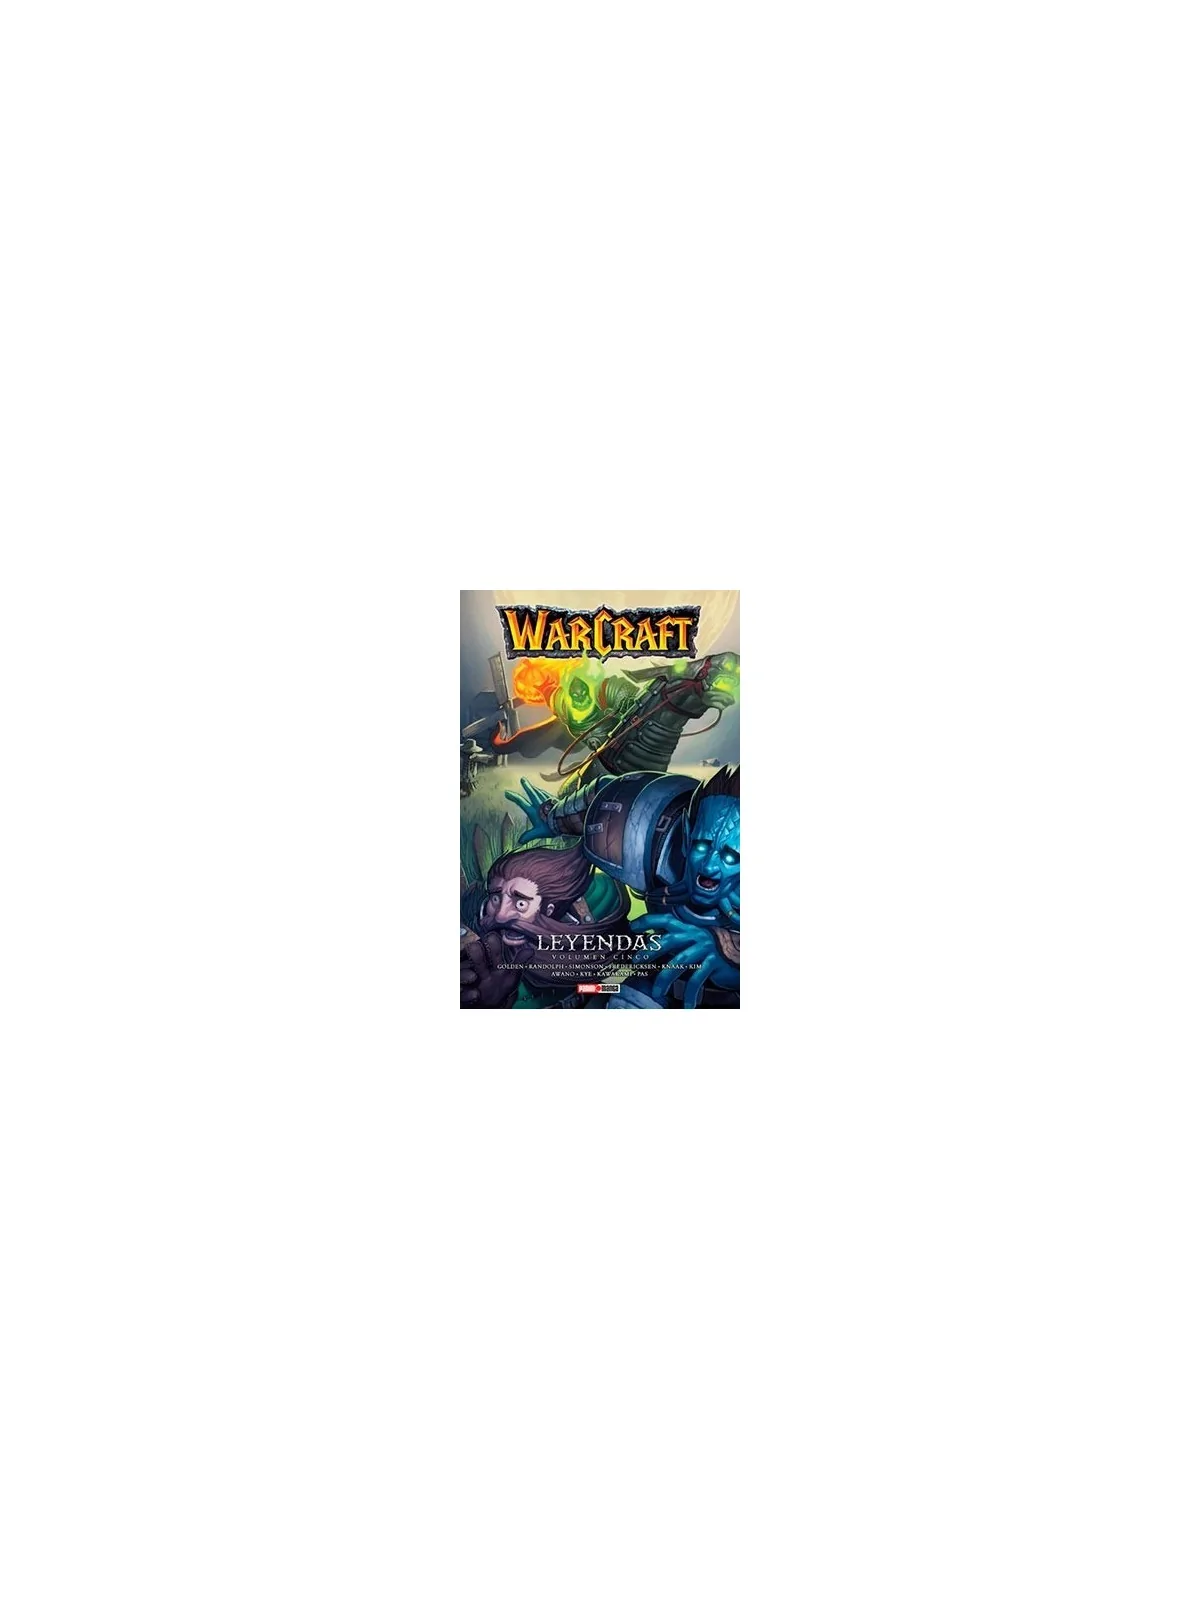 Comprar Warcraft: Leyendas 05 barato al mejor precio 8,51 € de Panini 